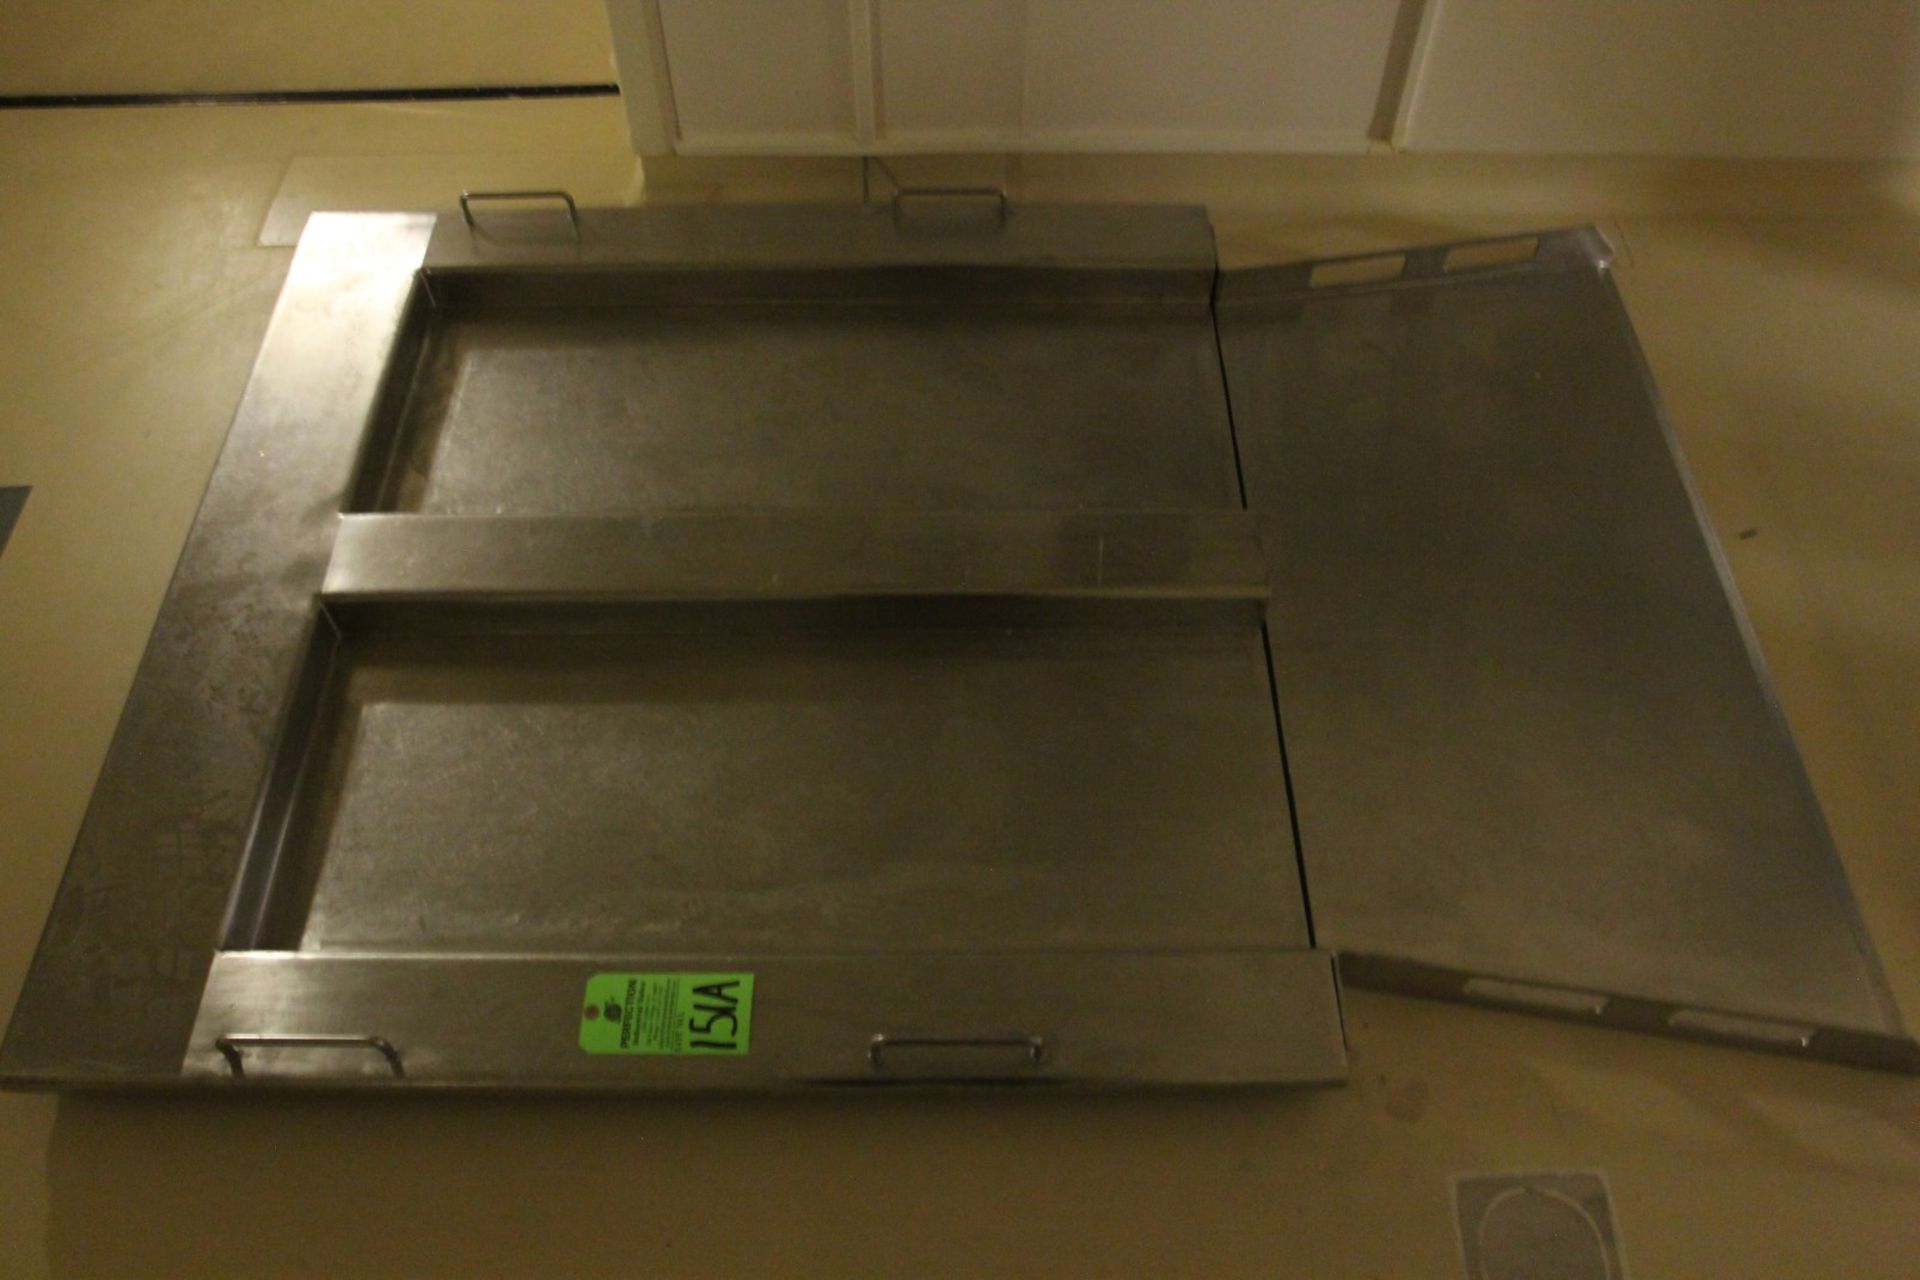 800 kg Stainless Steel Floor Scale w/ Mettler Toledo Lynx Digital Readout, s/n 5493403-5HG - Image 2 of 5